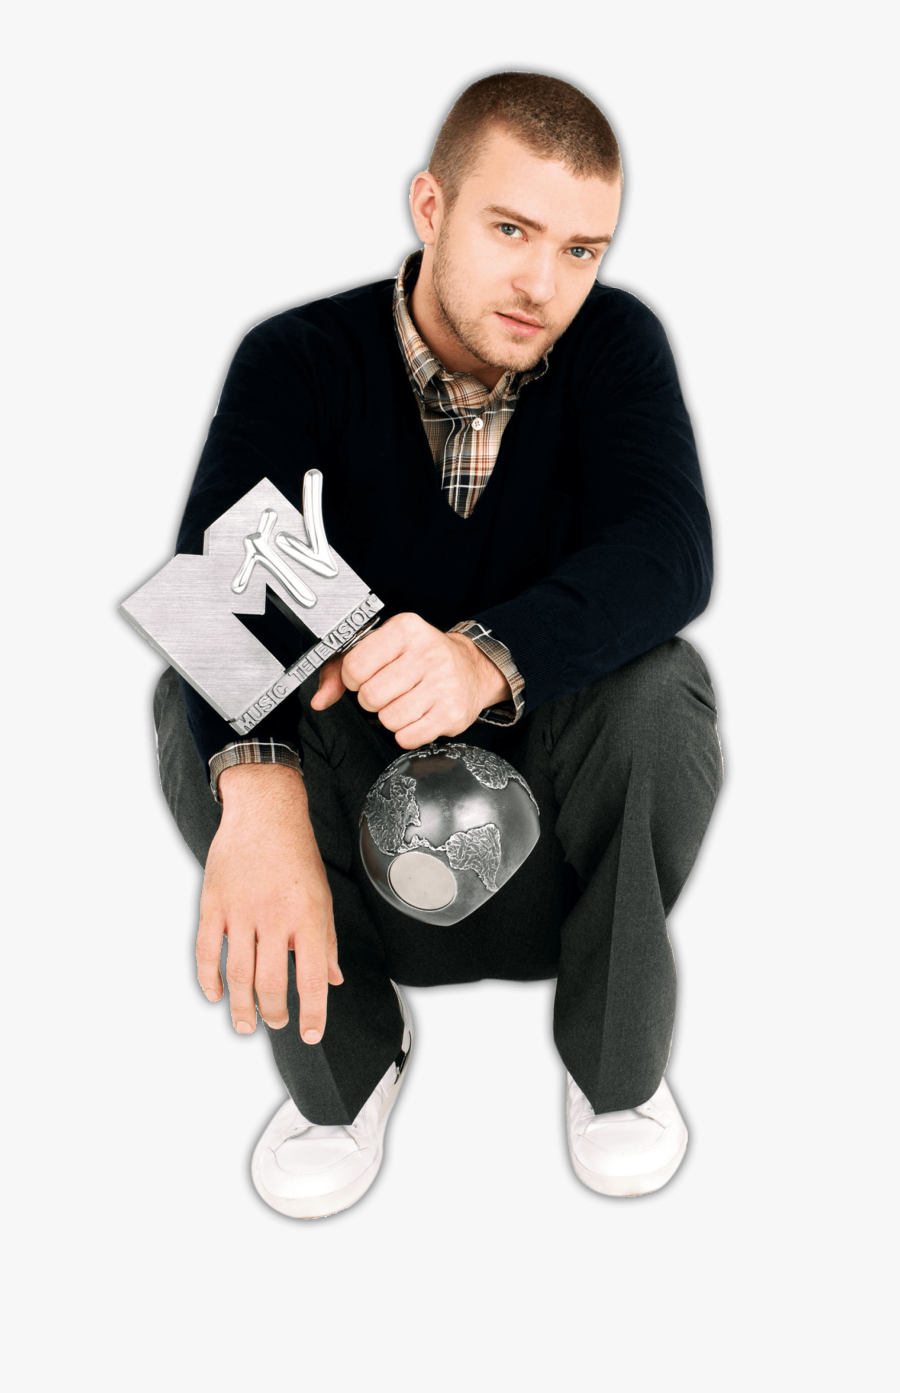 Mtv Justin Timberlake - Justin Timberlake Sit Png, Transparent Clipart